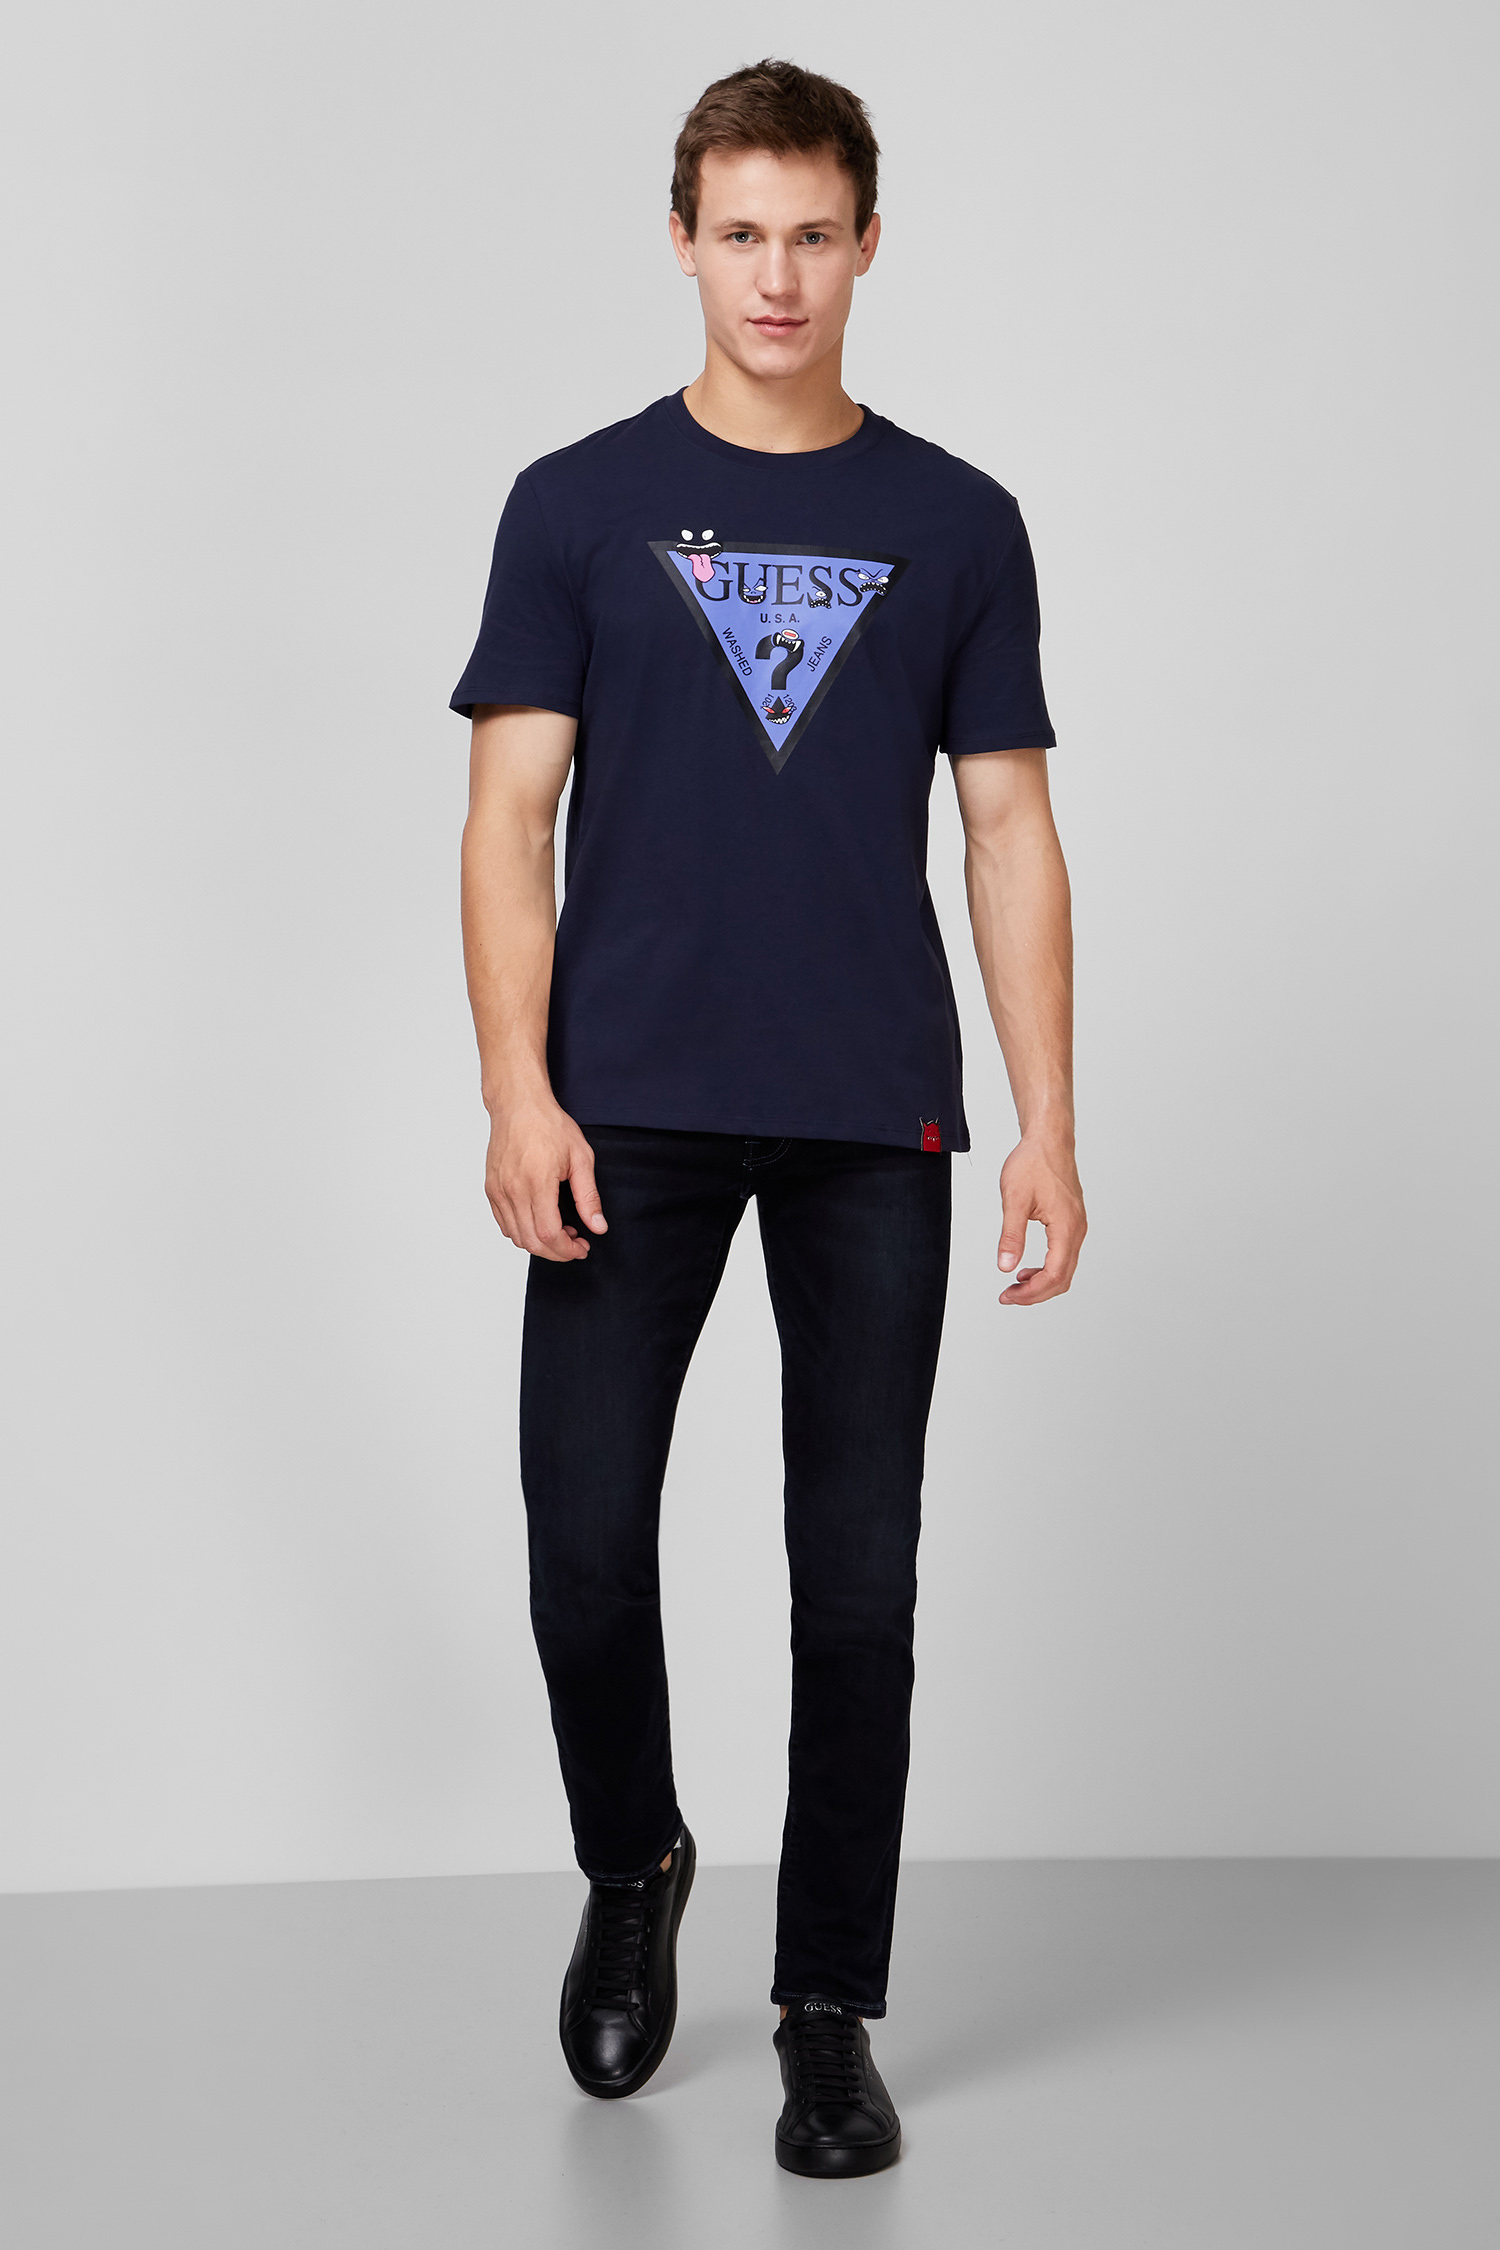 Мужская темно-синяя футболка с принтом Guess M0YI51.I3Z00;G720